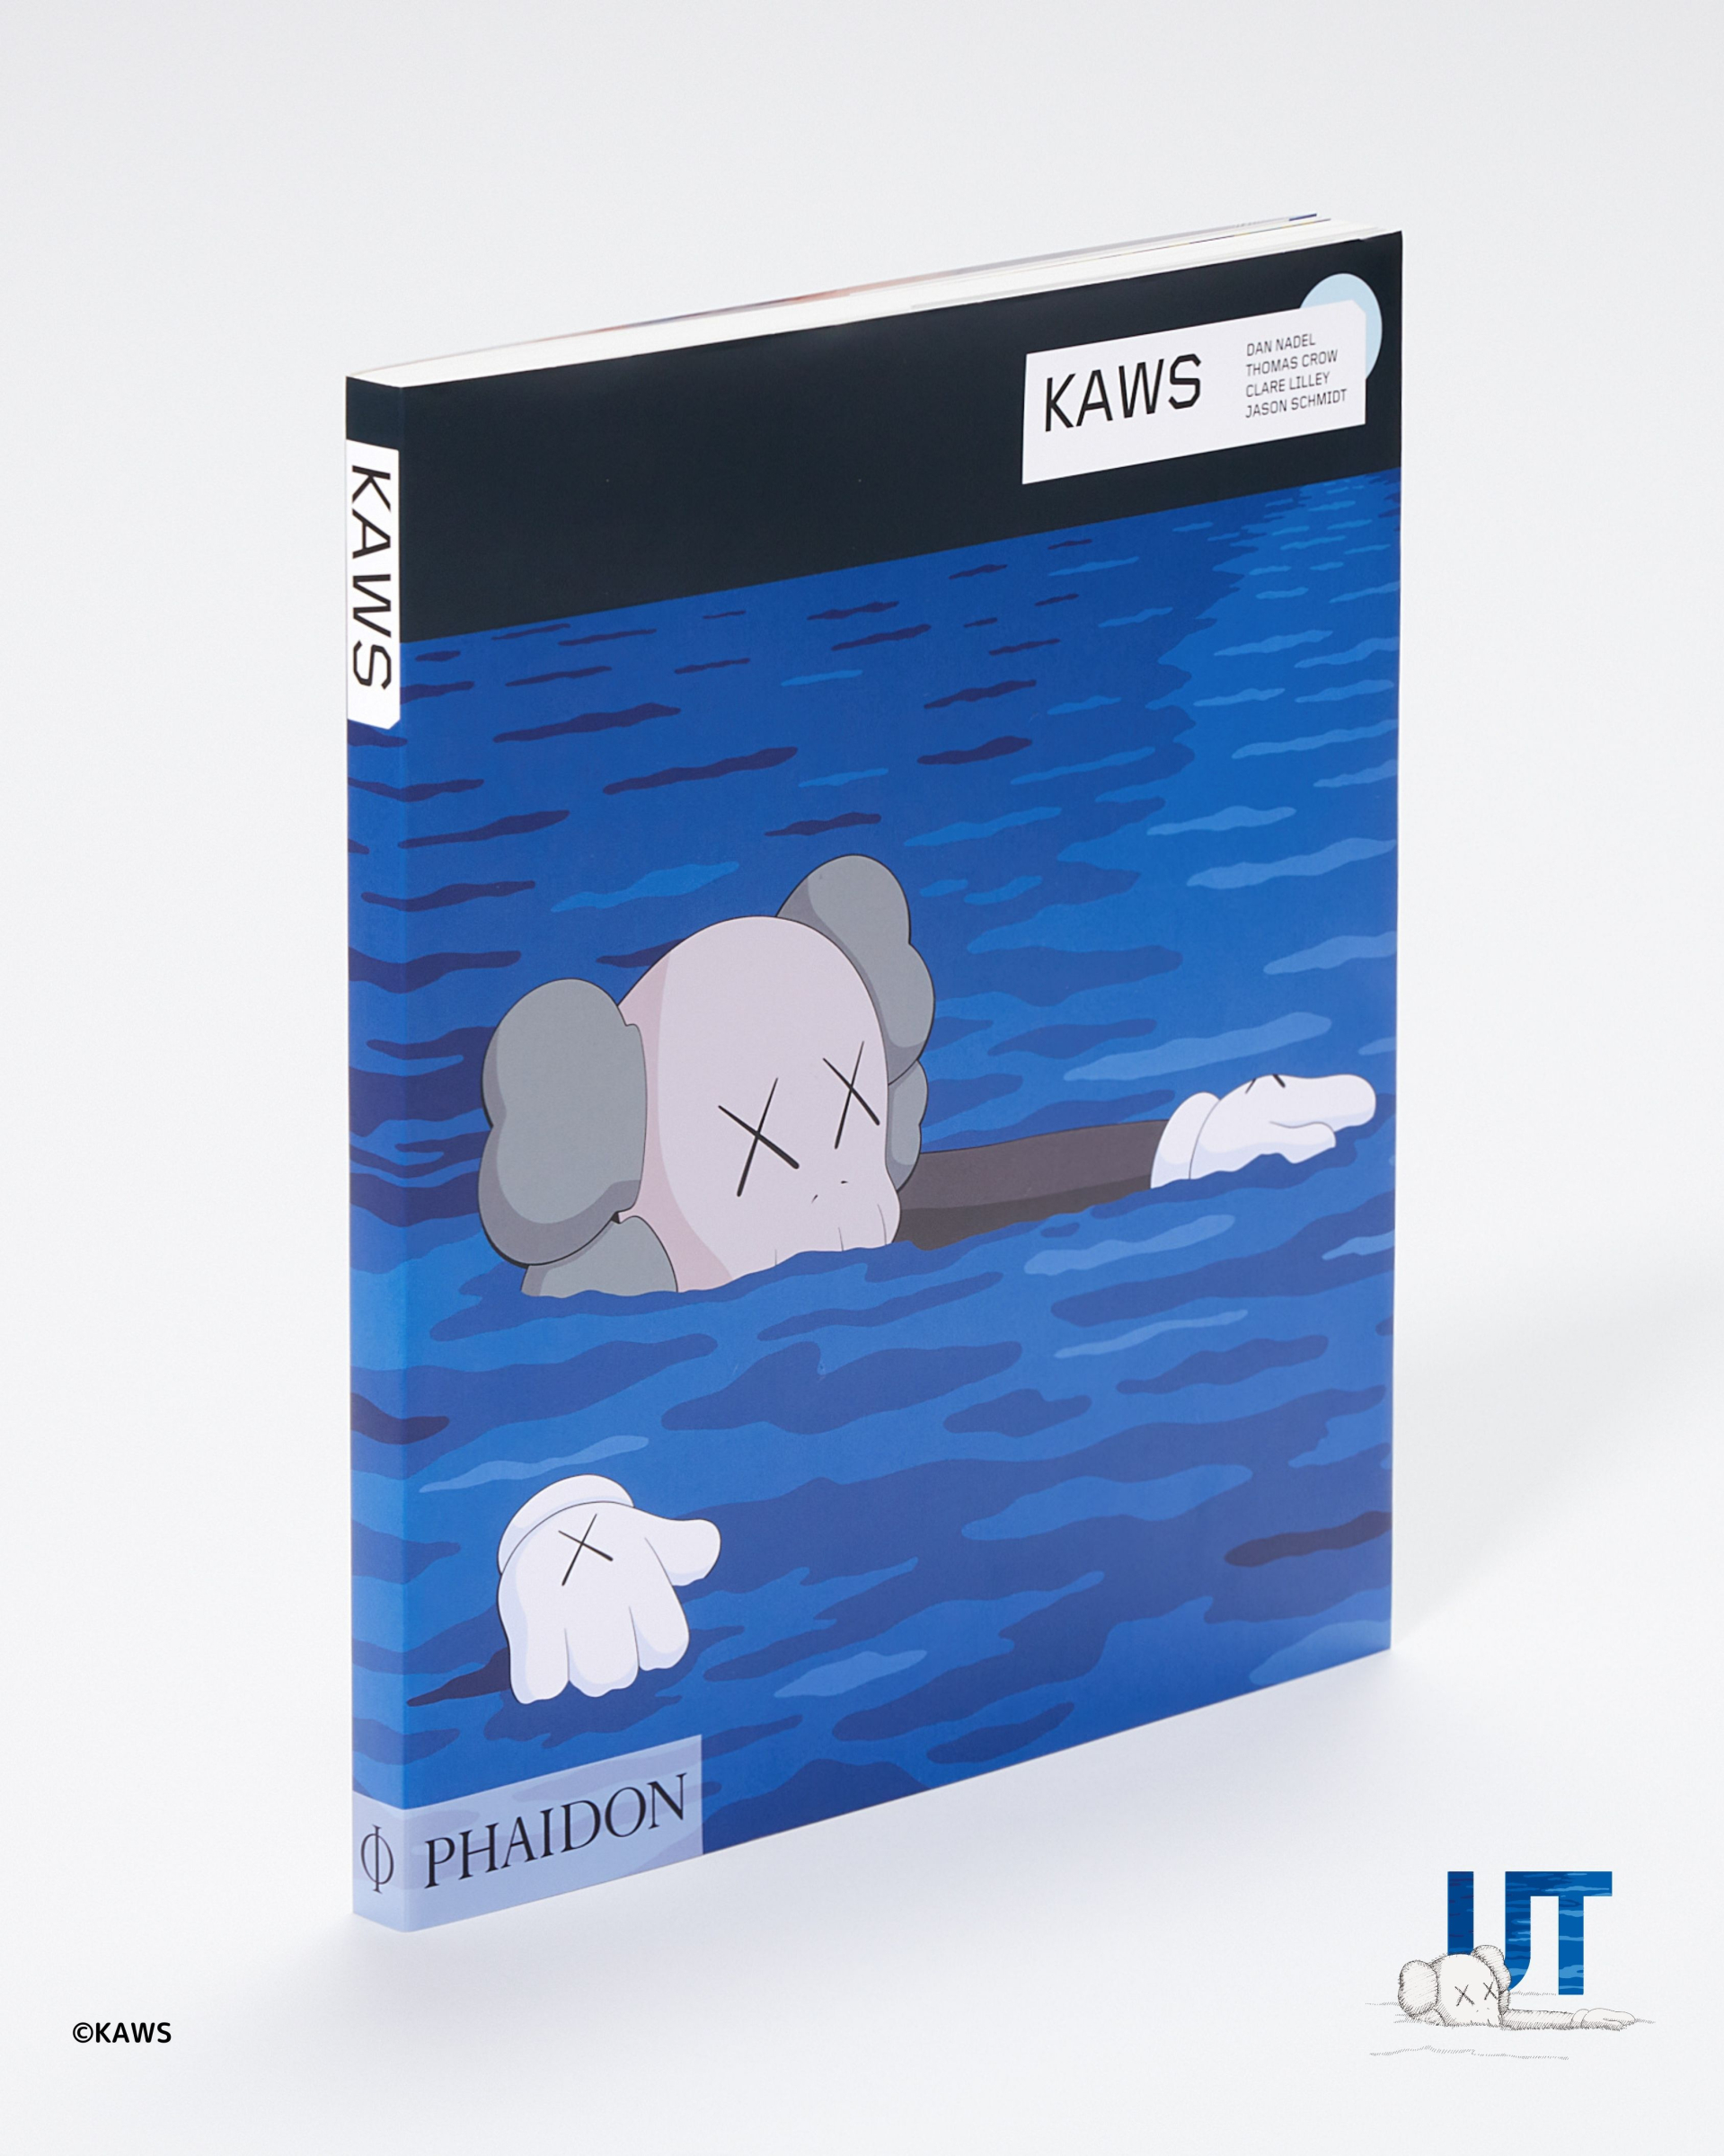 UNIQLO ra mắt BST UT KAWS nhân sự kiện ra mắt ấn bản sách nghệ thuật từ KAWS - ảnh 2